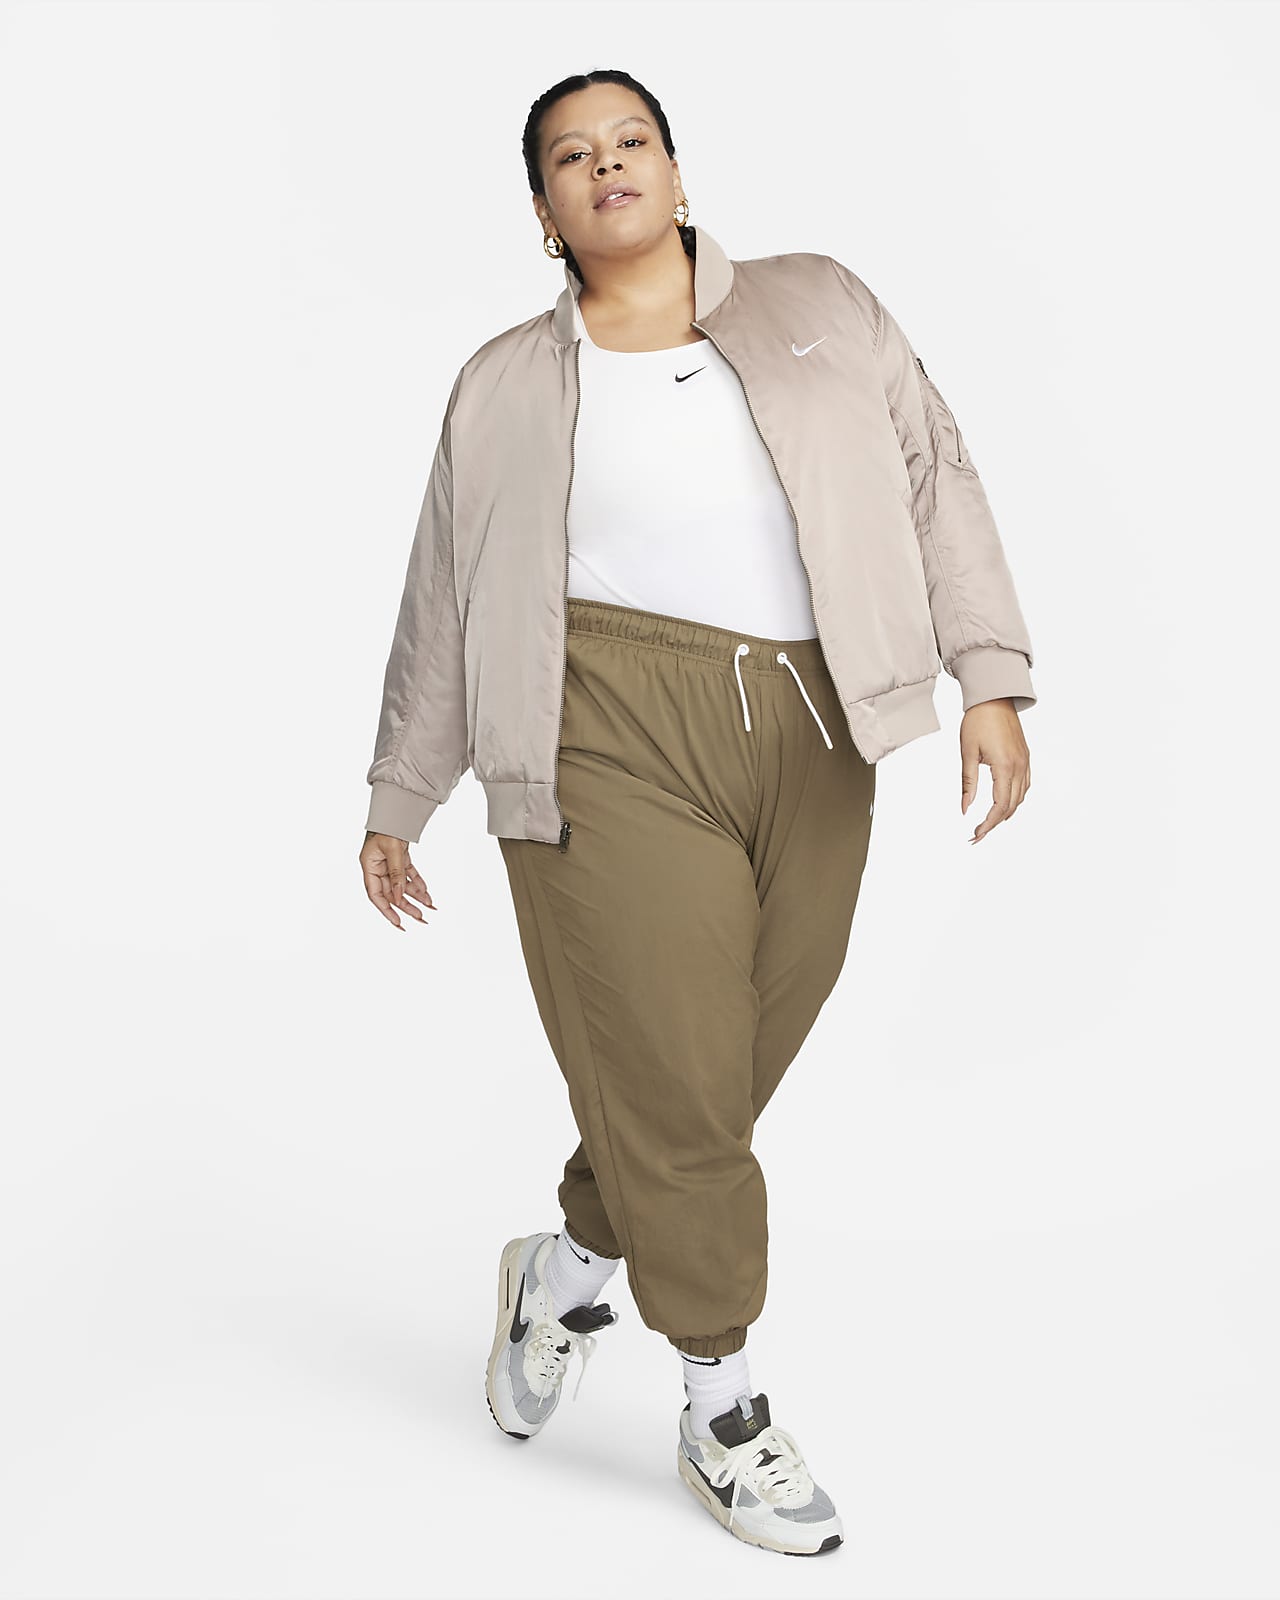 Nike Sportswear Women's Reversible Varsity Bomber Jacket (Plus Size)